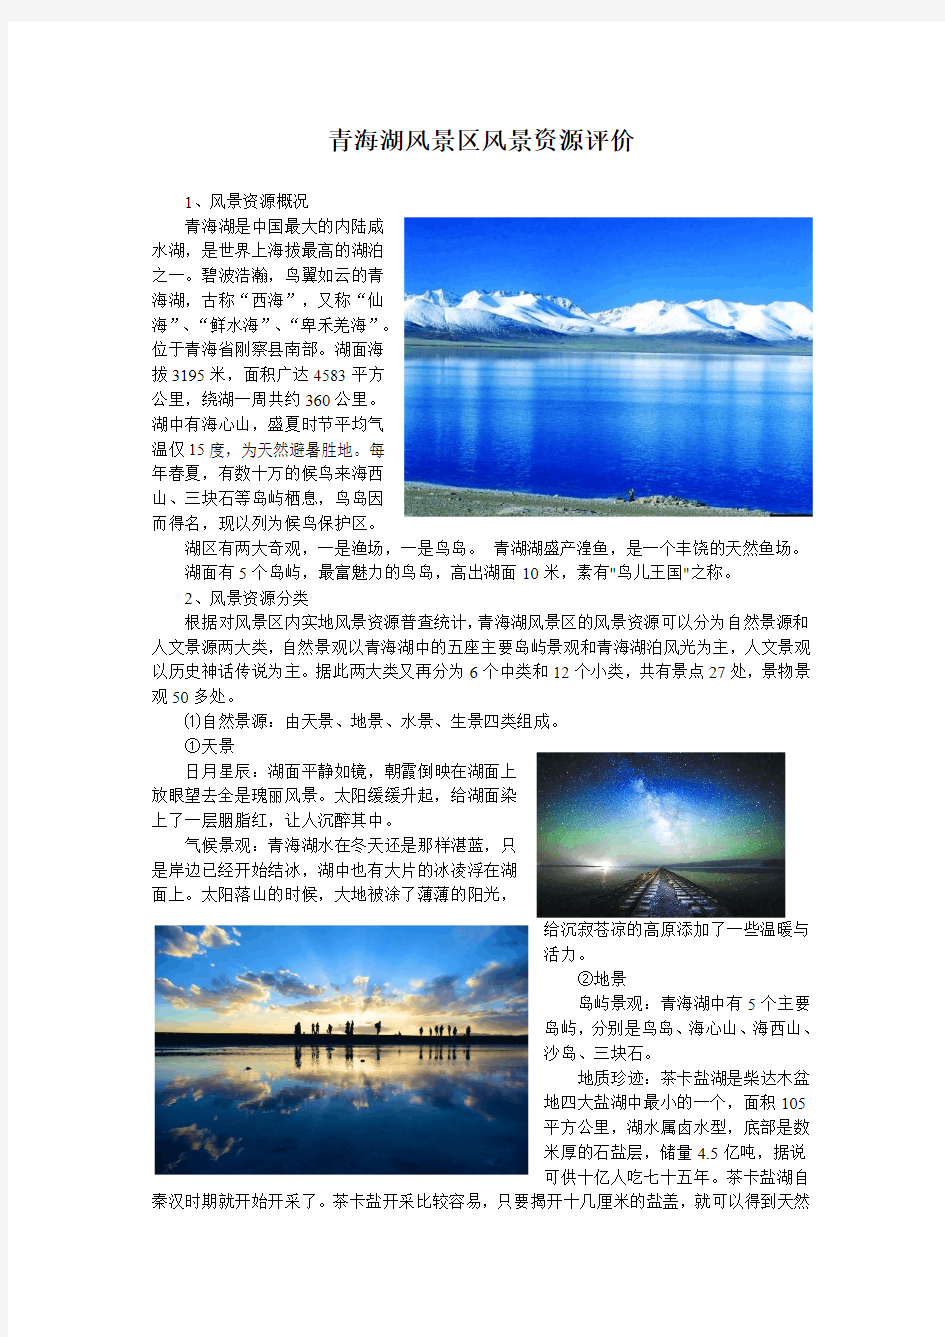 青海湖风景区资源评价